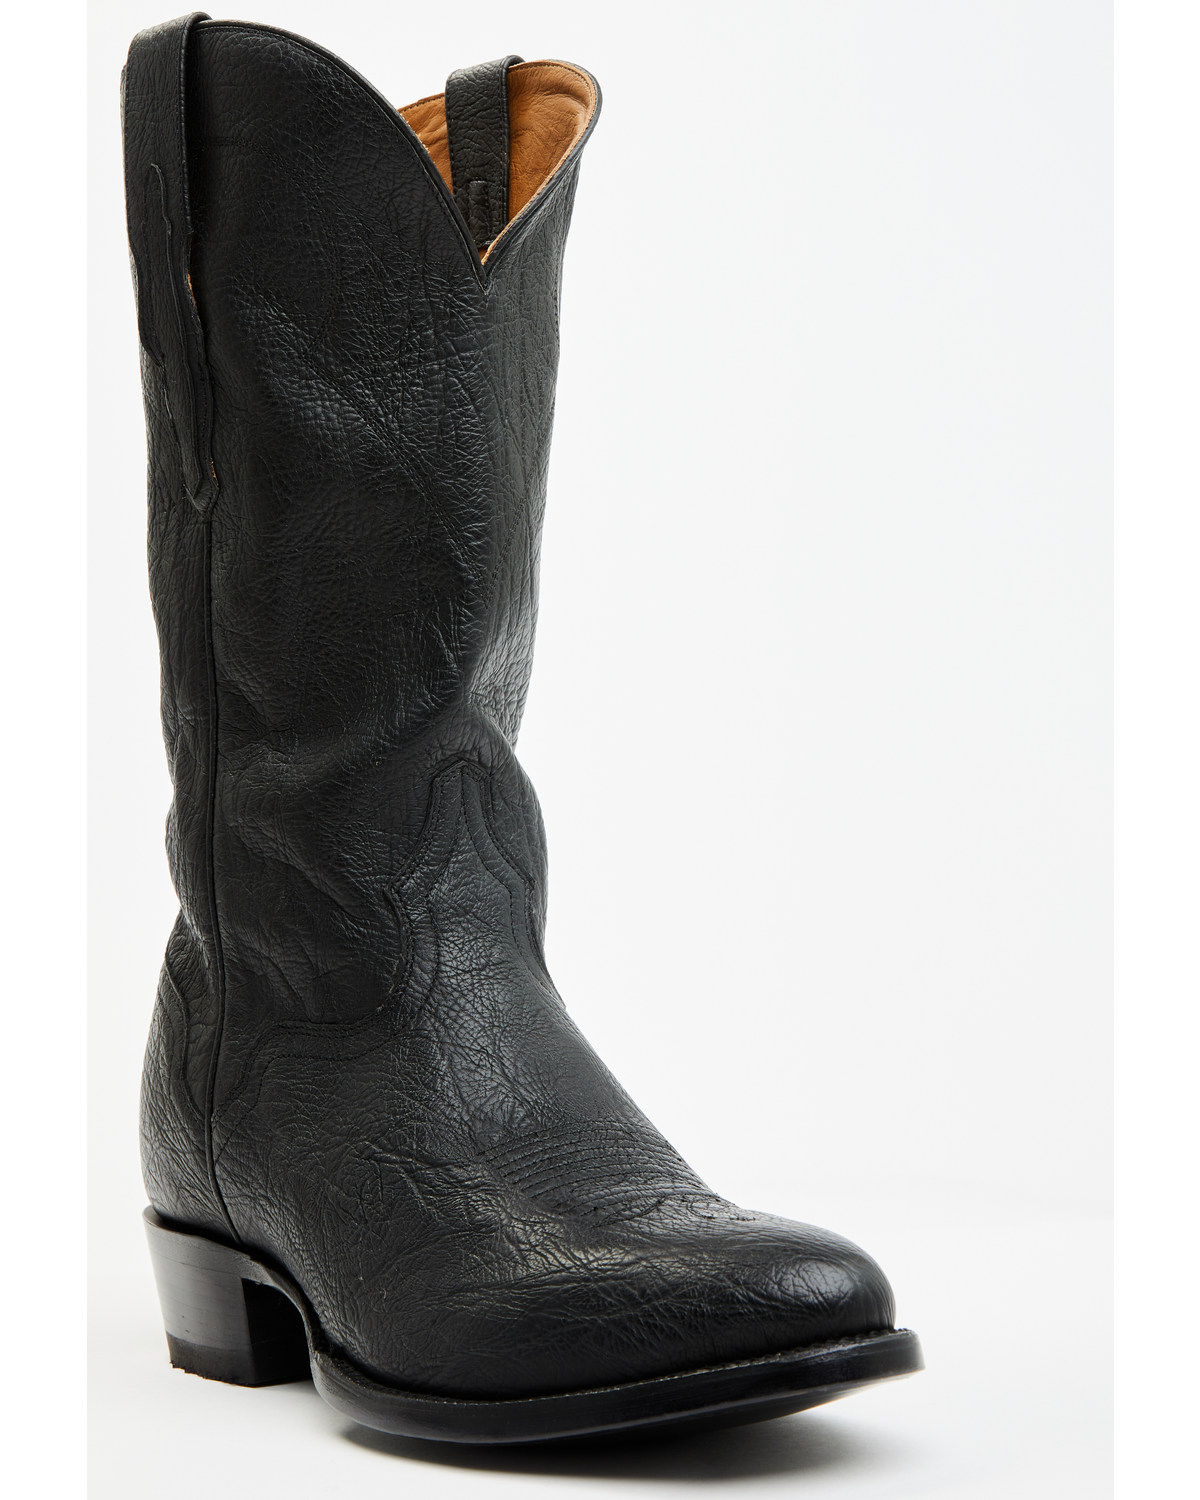 El Dorado Men's Sammy Western Boots